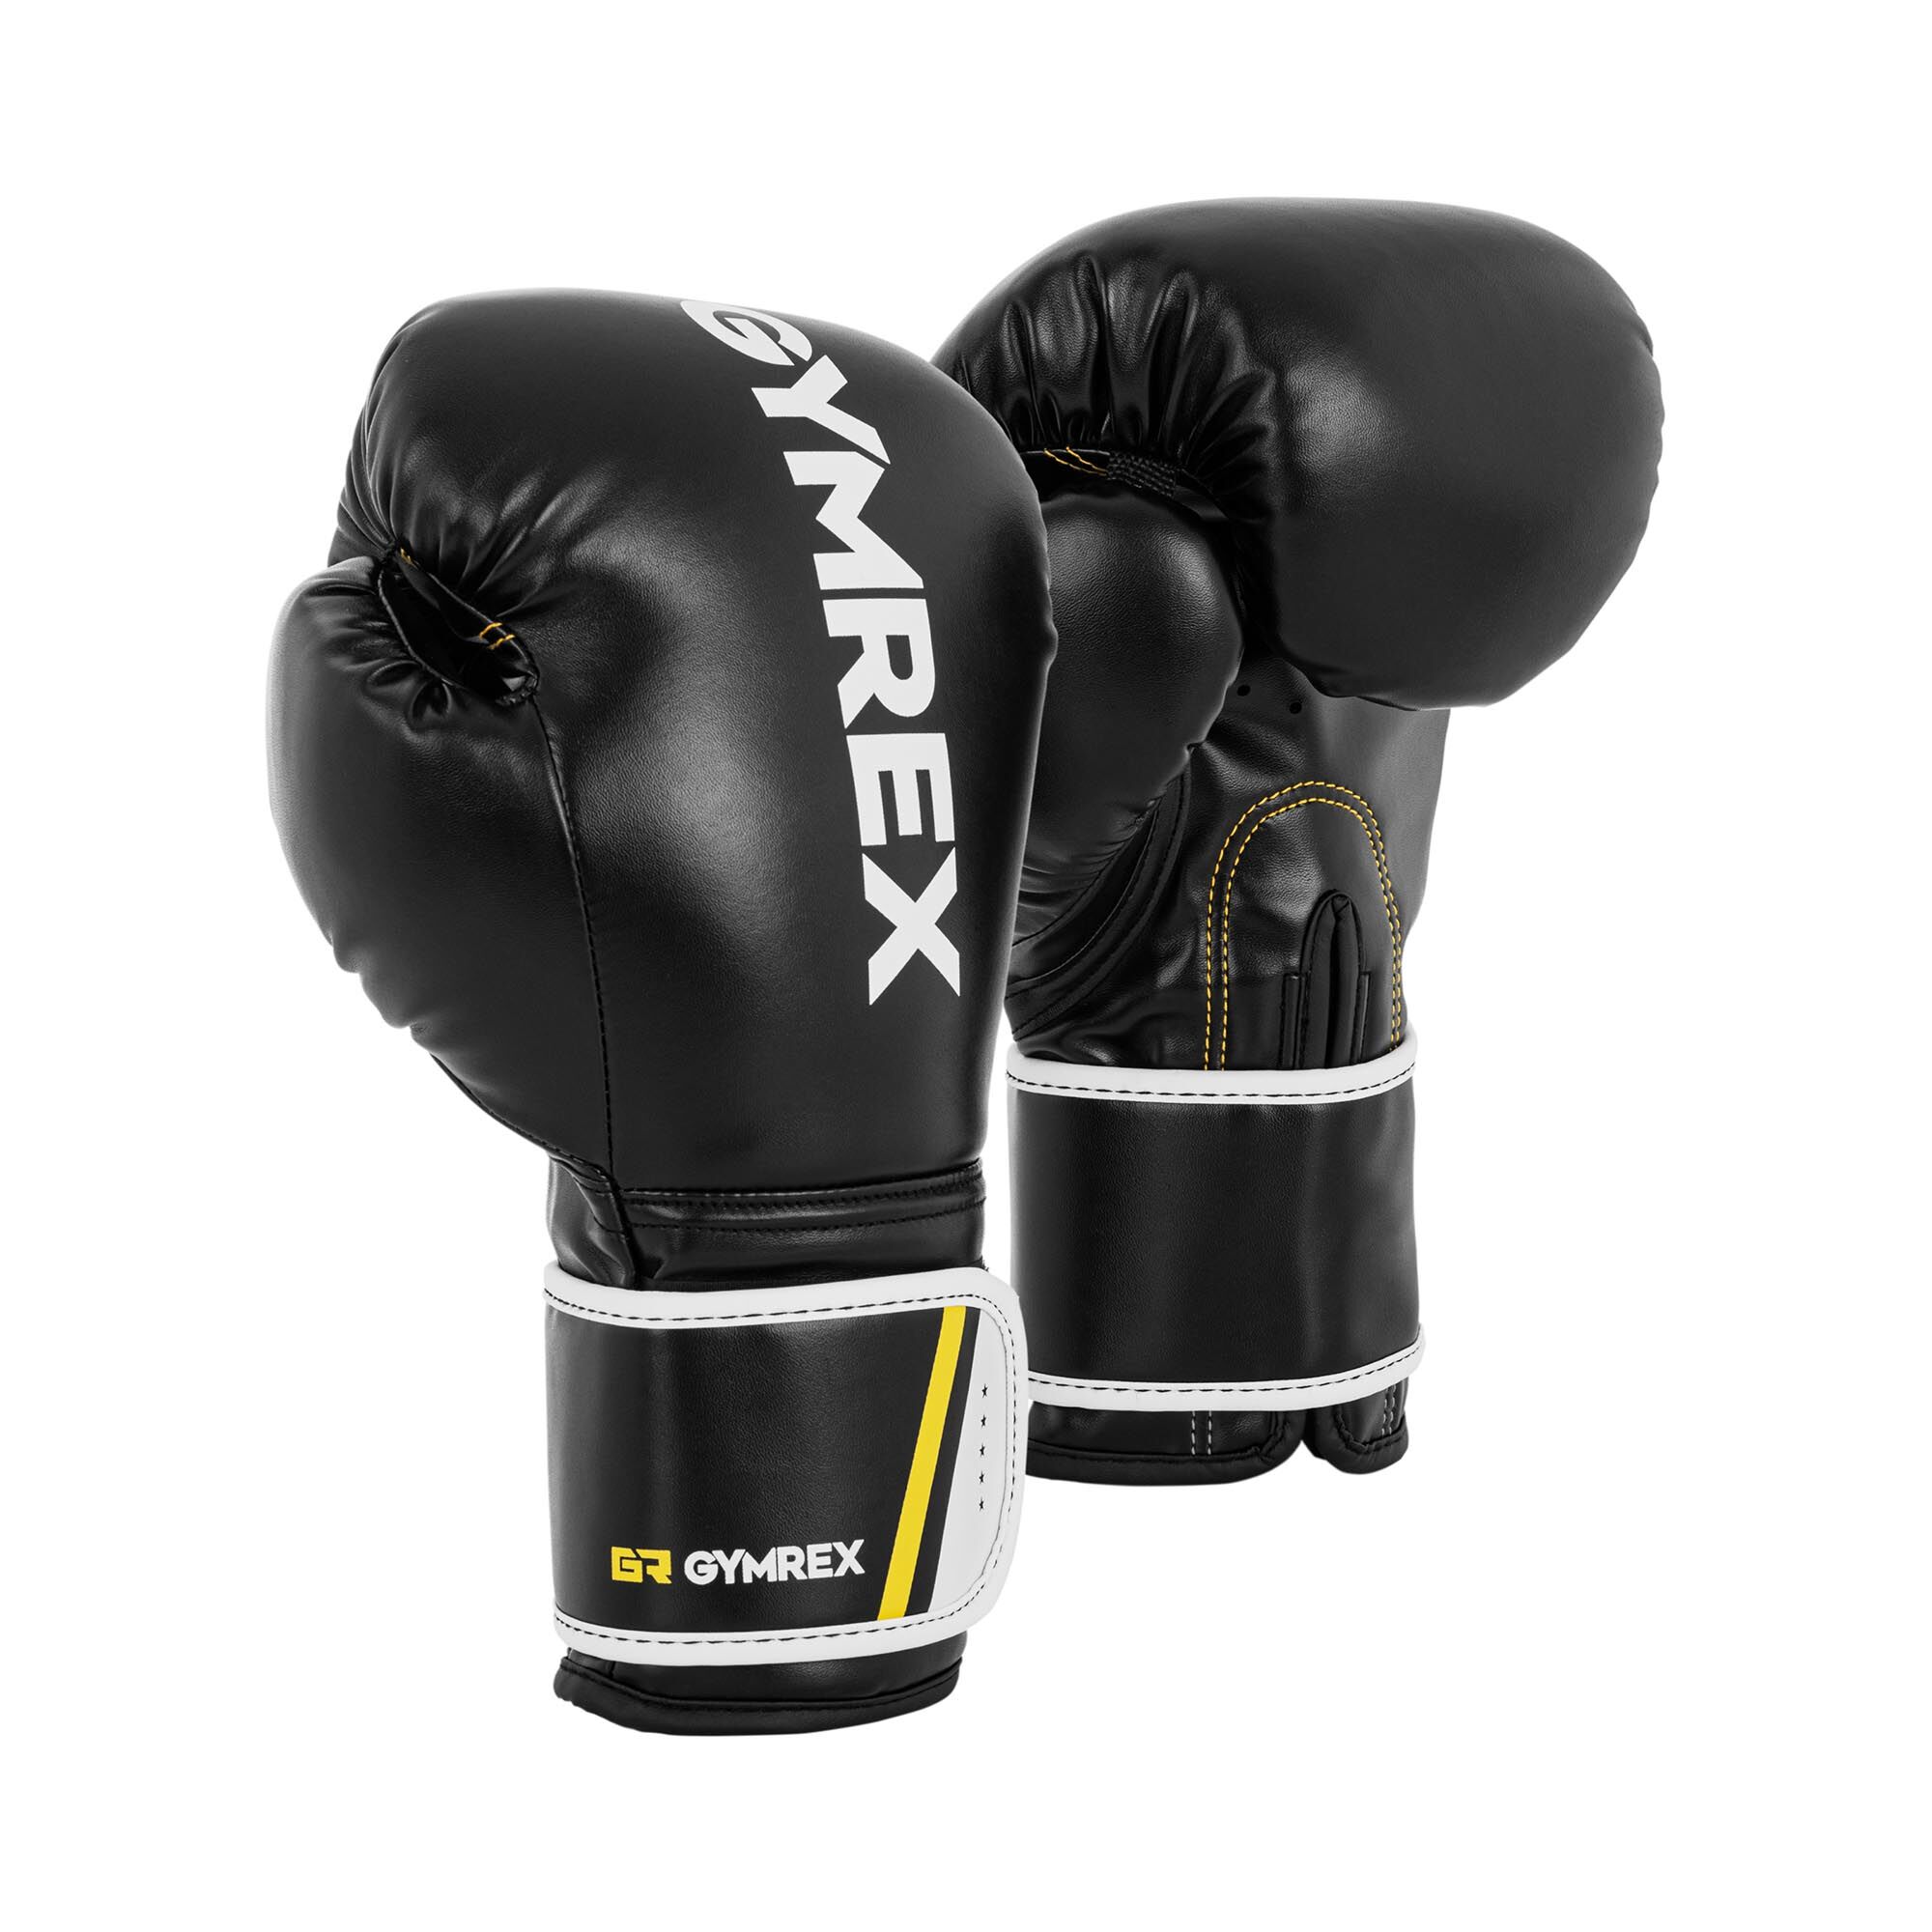 Gymrex Boxerské rukavice - 14 oz - černé GR-BG 14BB